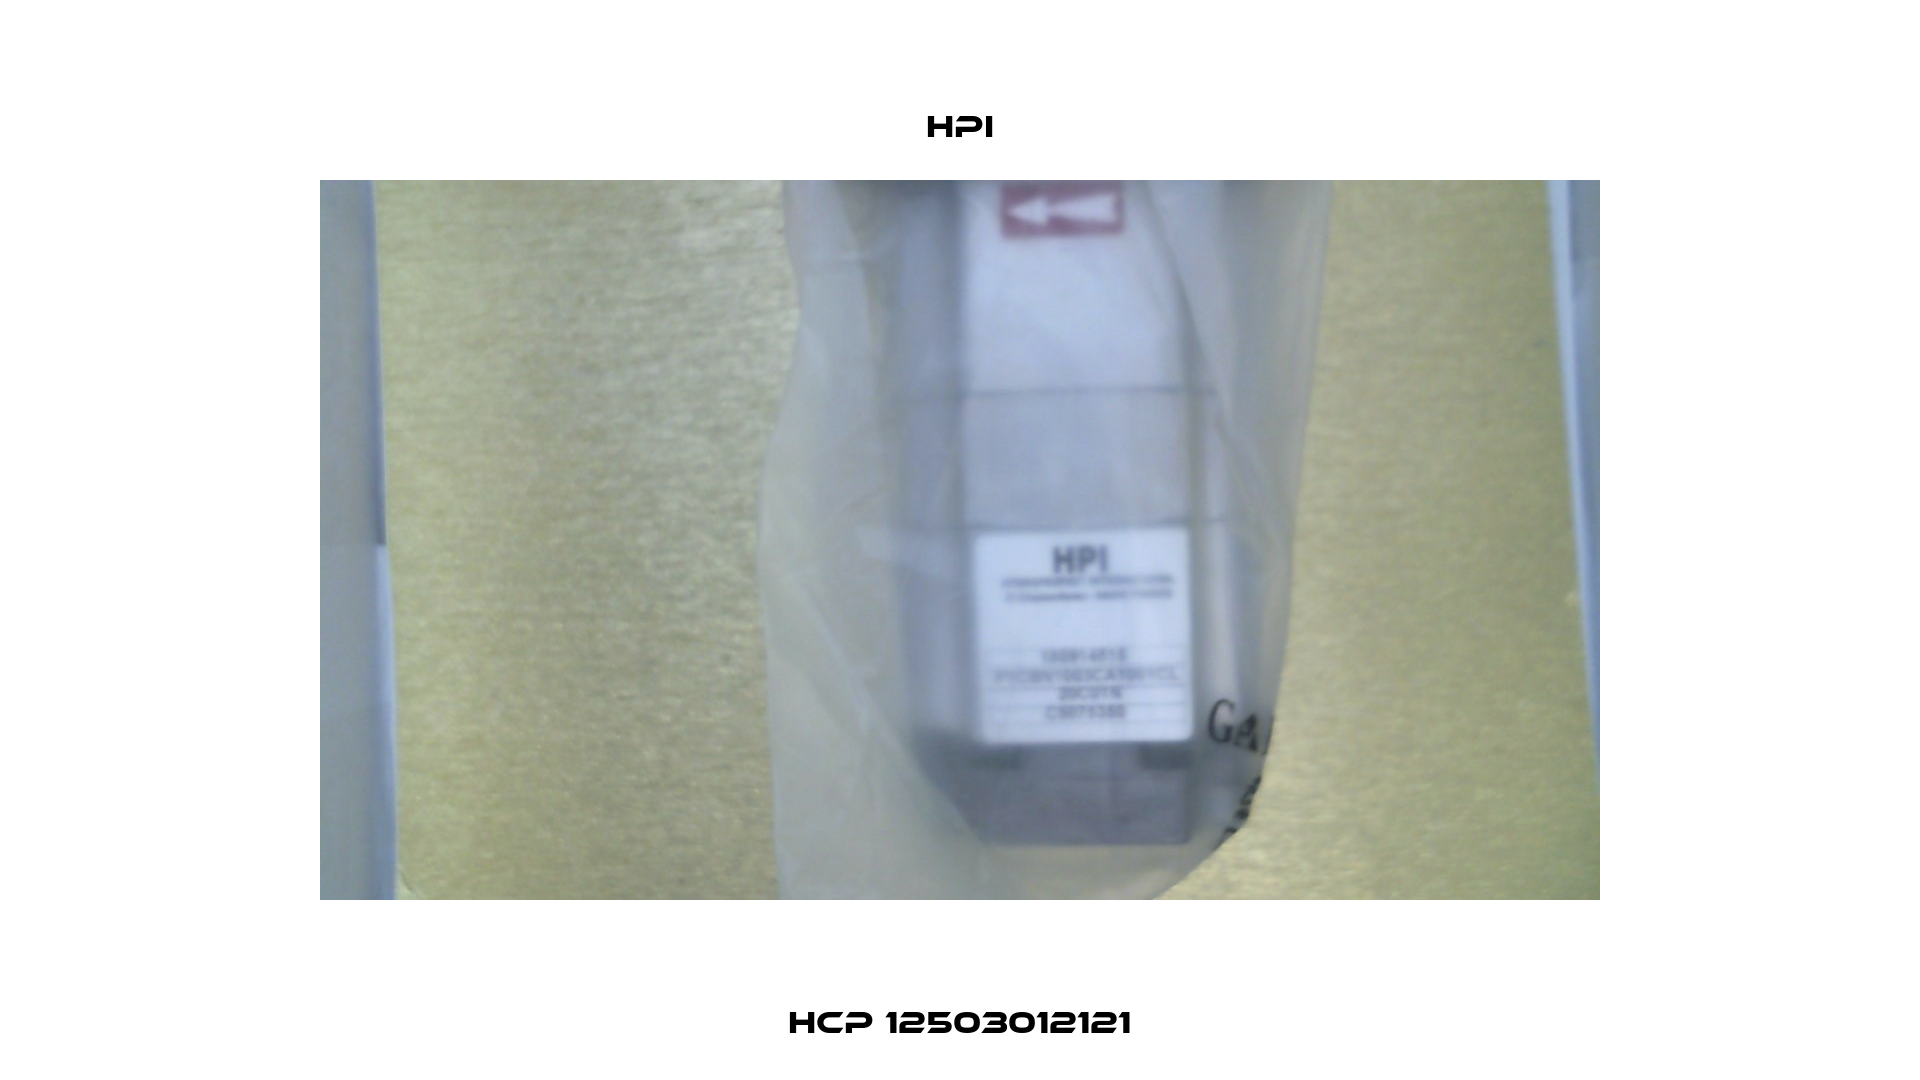 HCP 12503012121 HPI